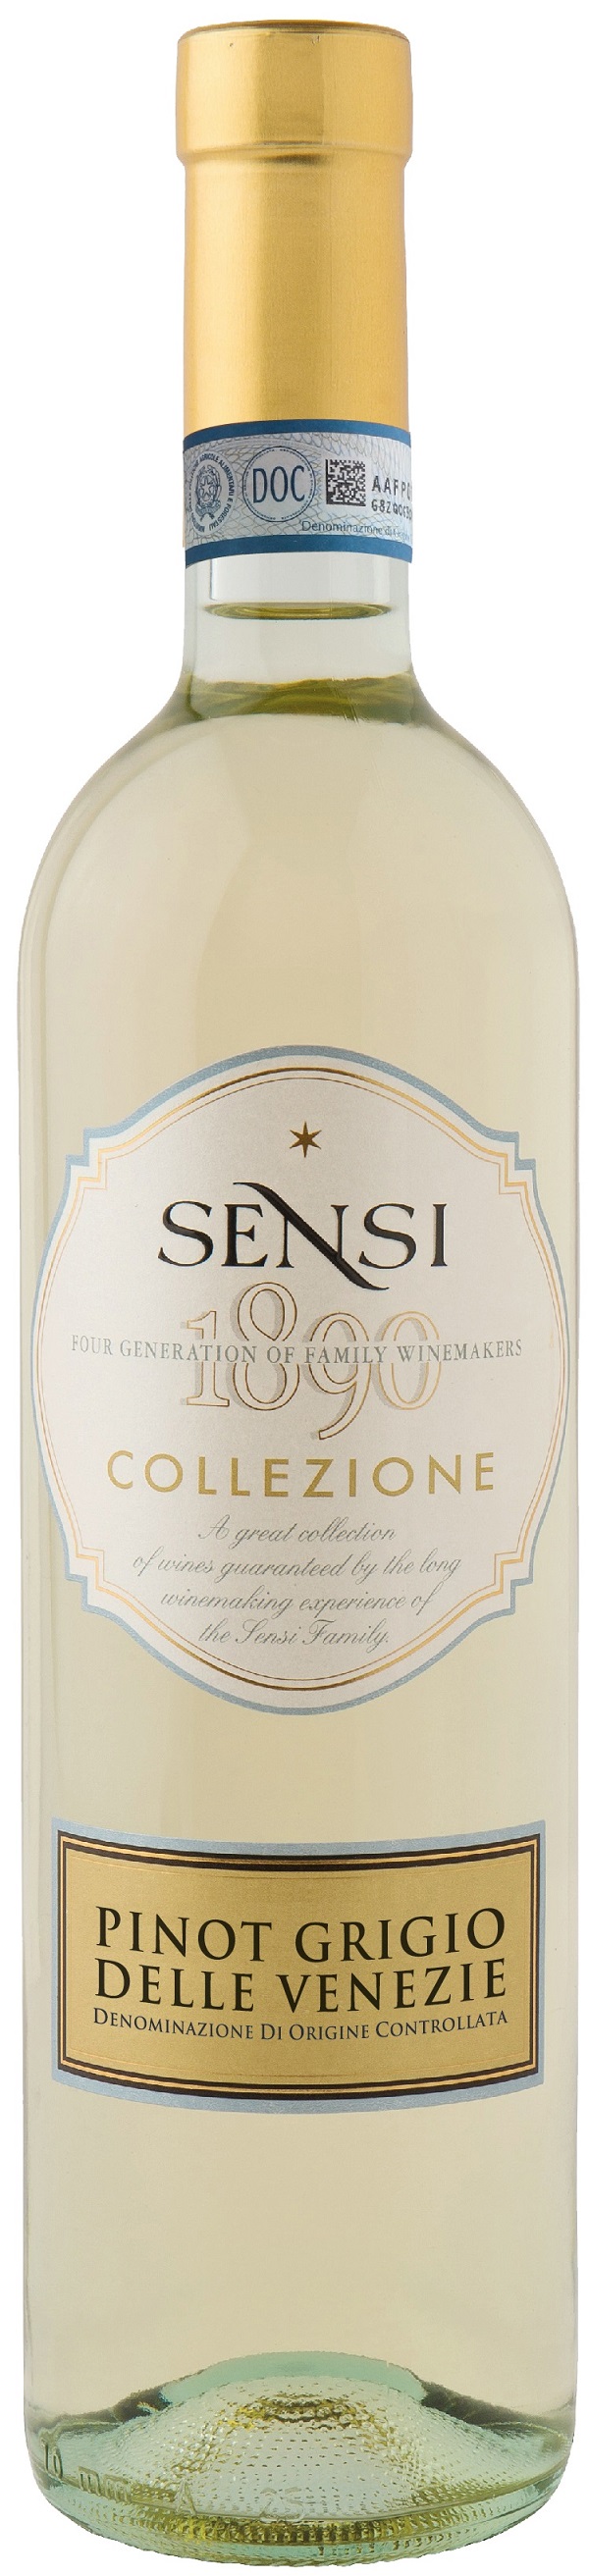 Collezione Pinot Grigio IGT 0,75 l Sensi Vigne e Vini